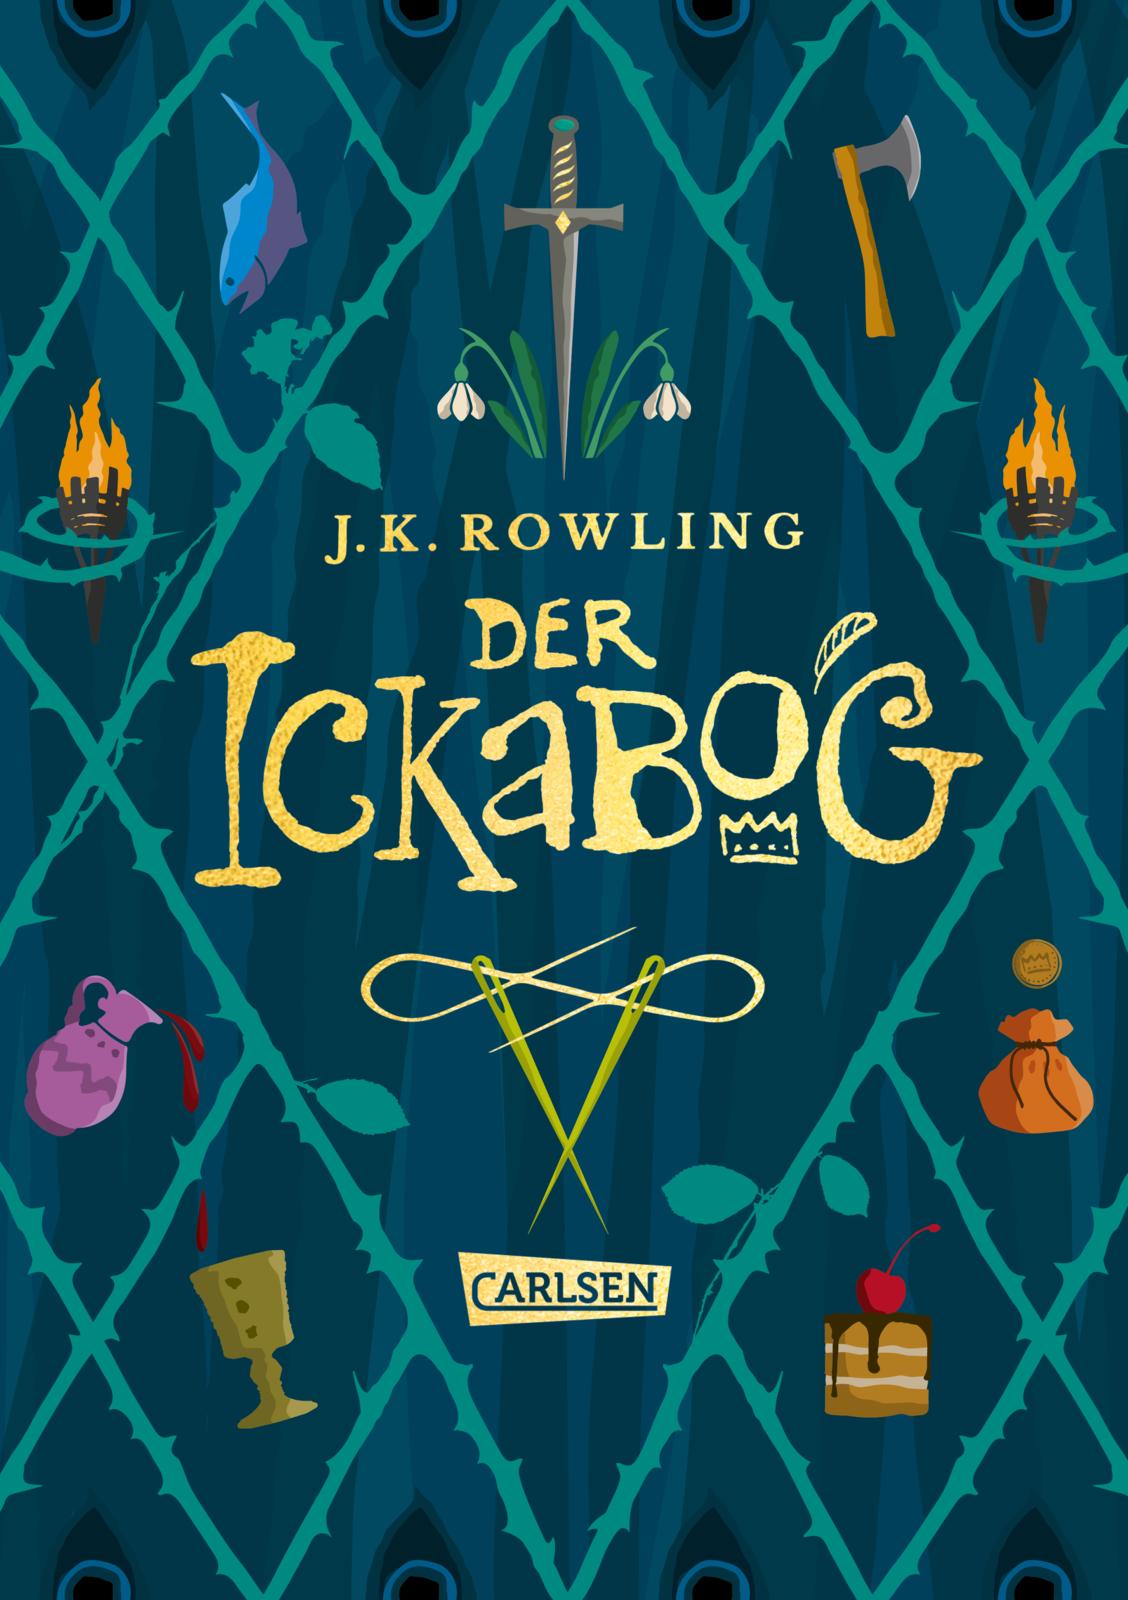 Der Ickabog von J.K. Rowling + 1 original Button